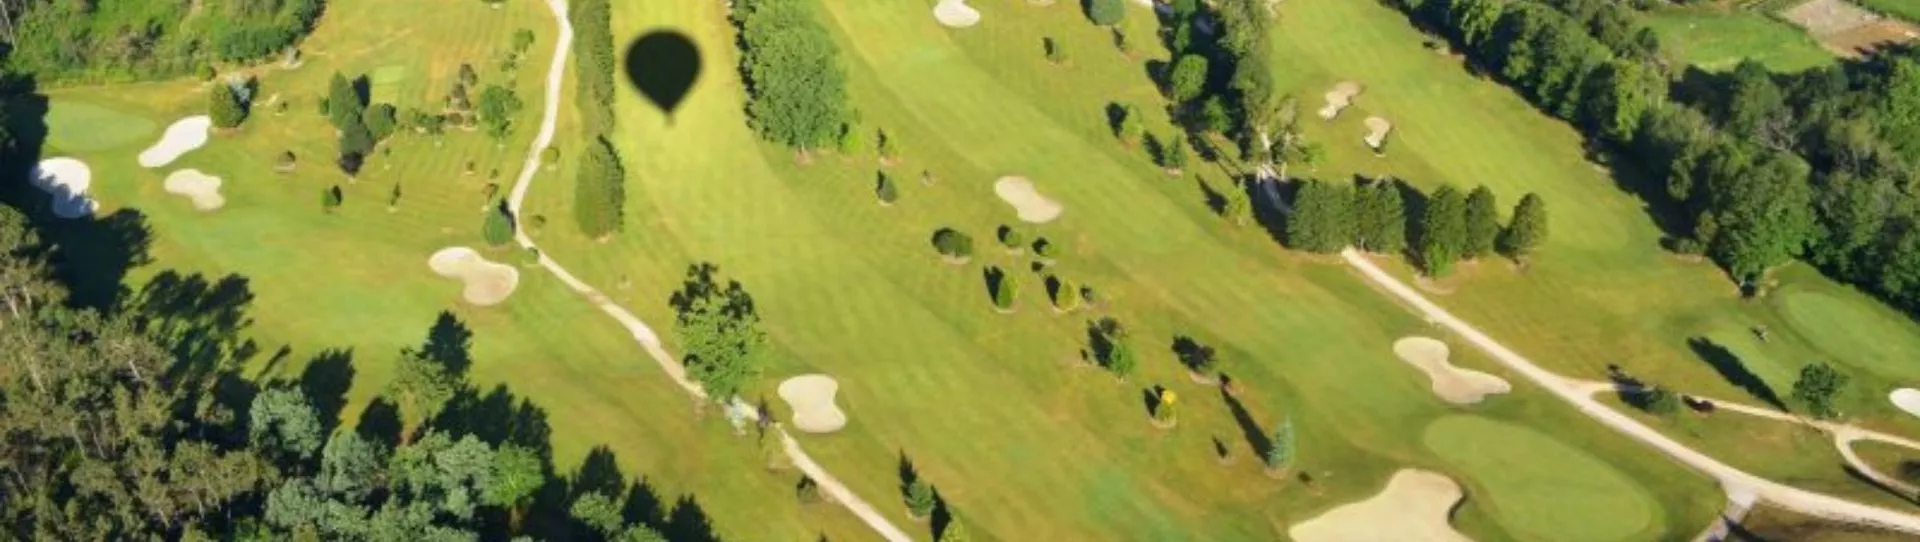 Spain golf courses - Mondariz Golf Course - Photo 1